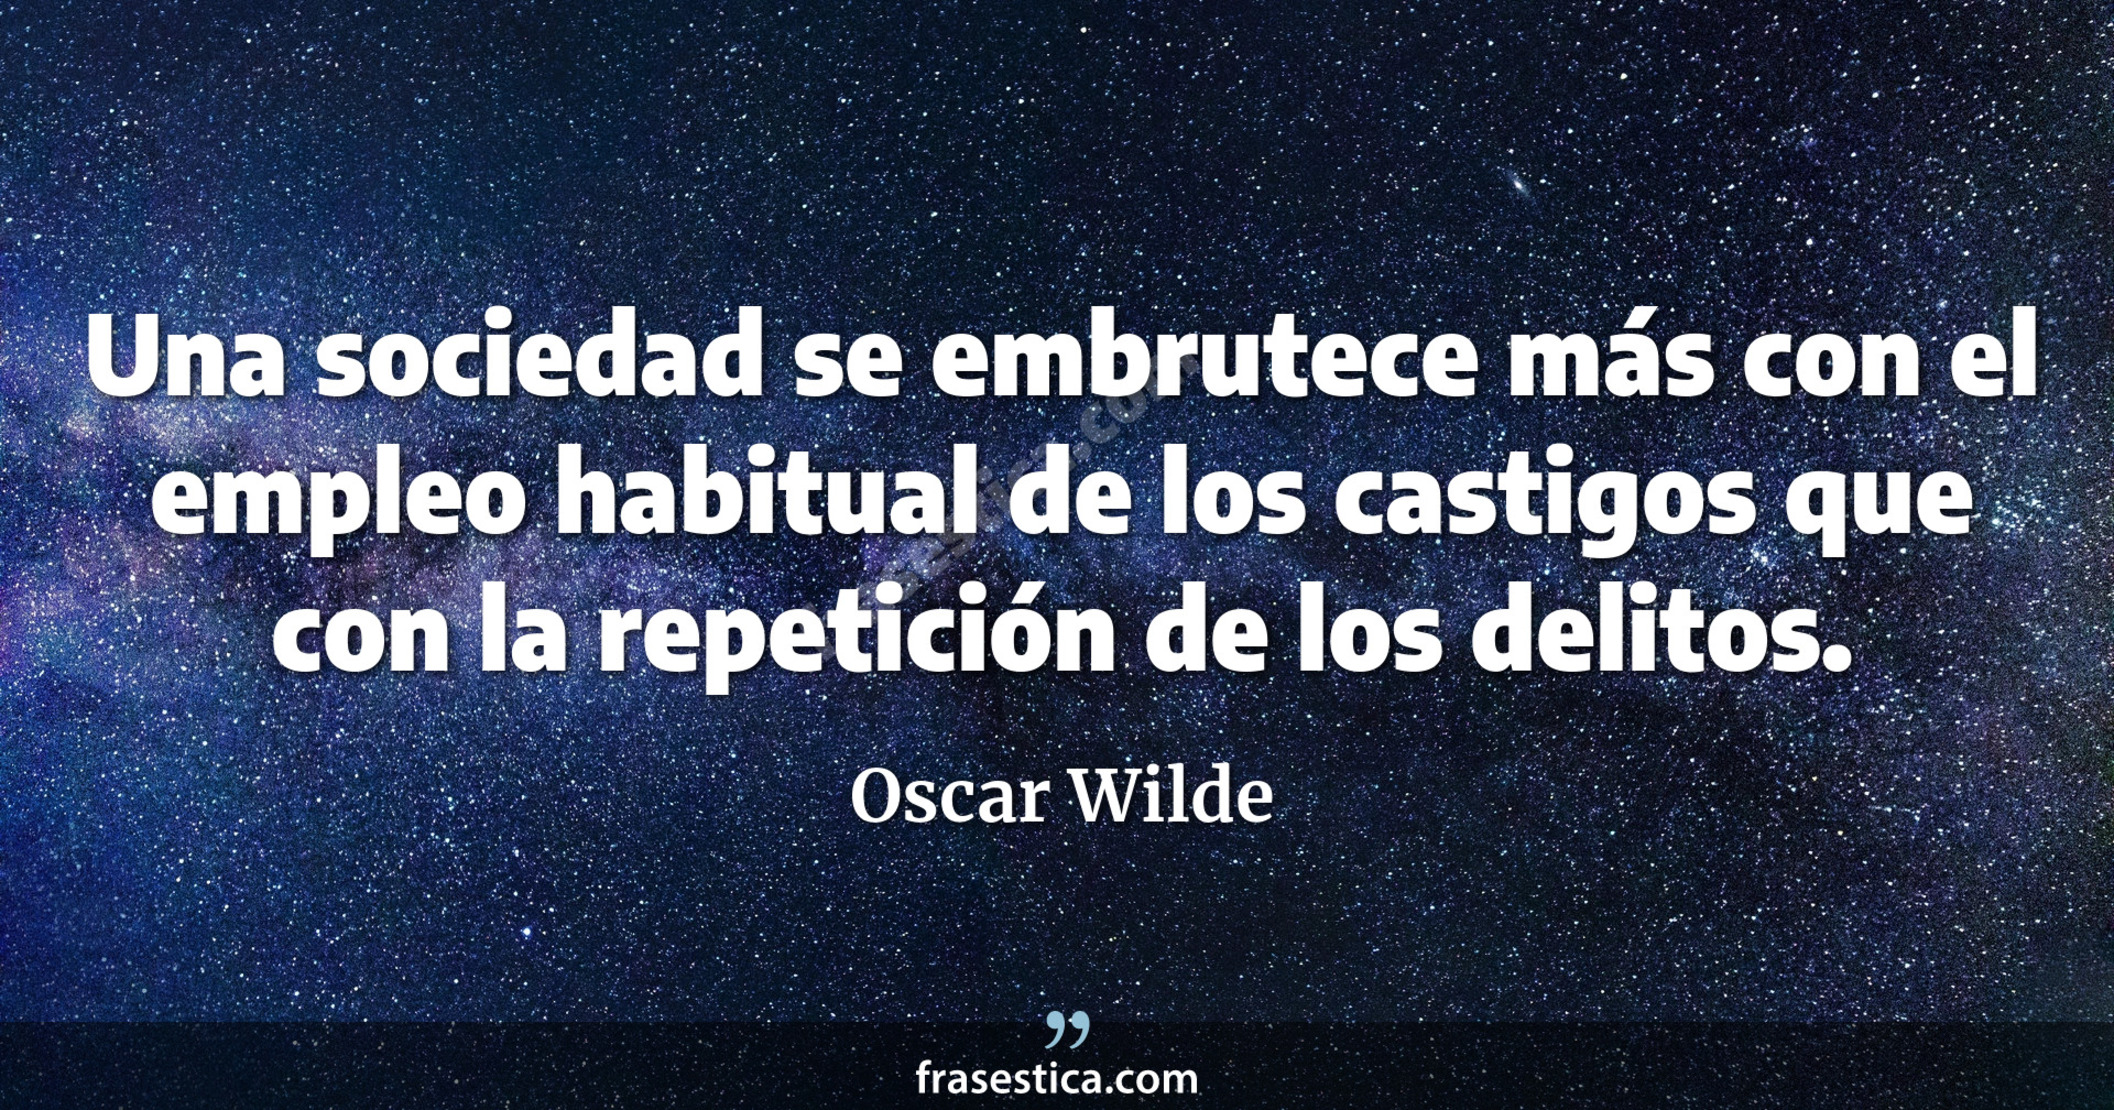 Una sociedad se embrutece más con el empleo habitual de los castigos que con la repetición de los delitos. - Oscar Wilde